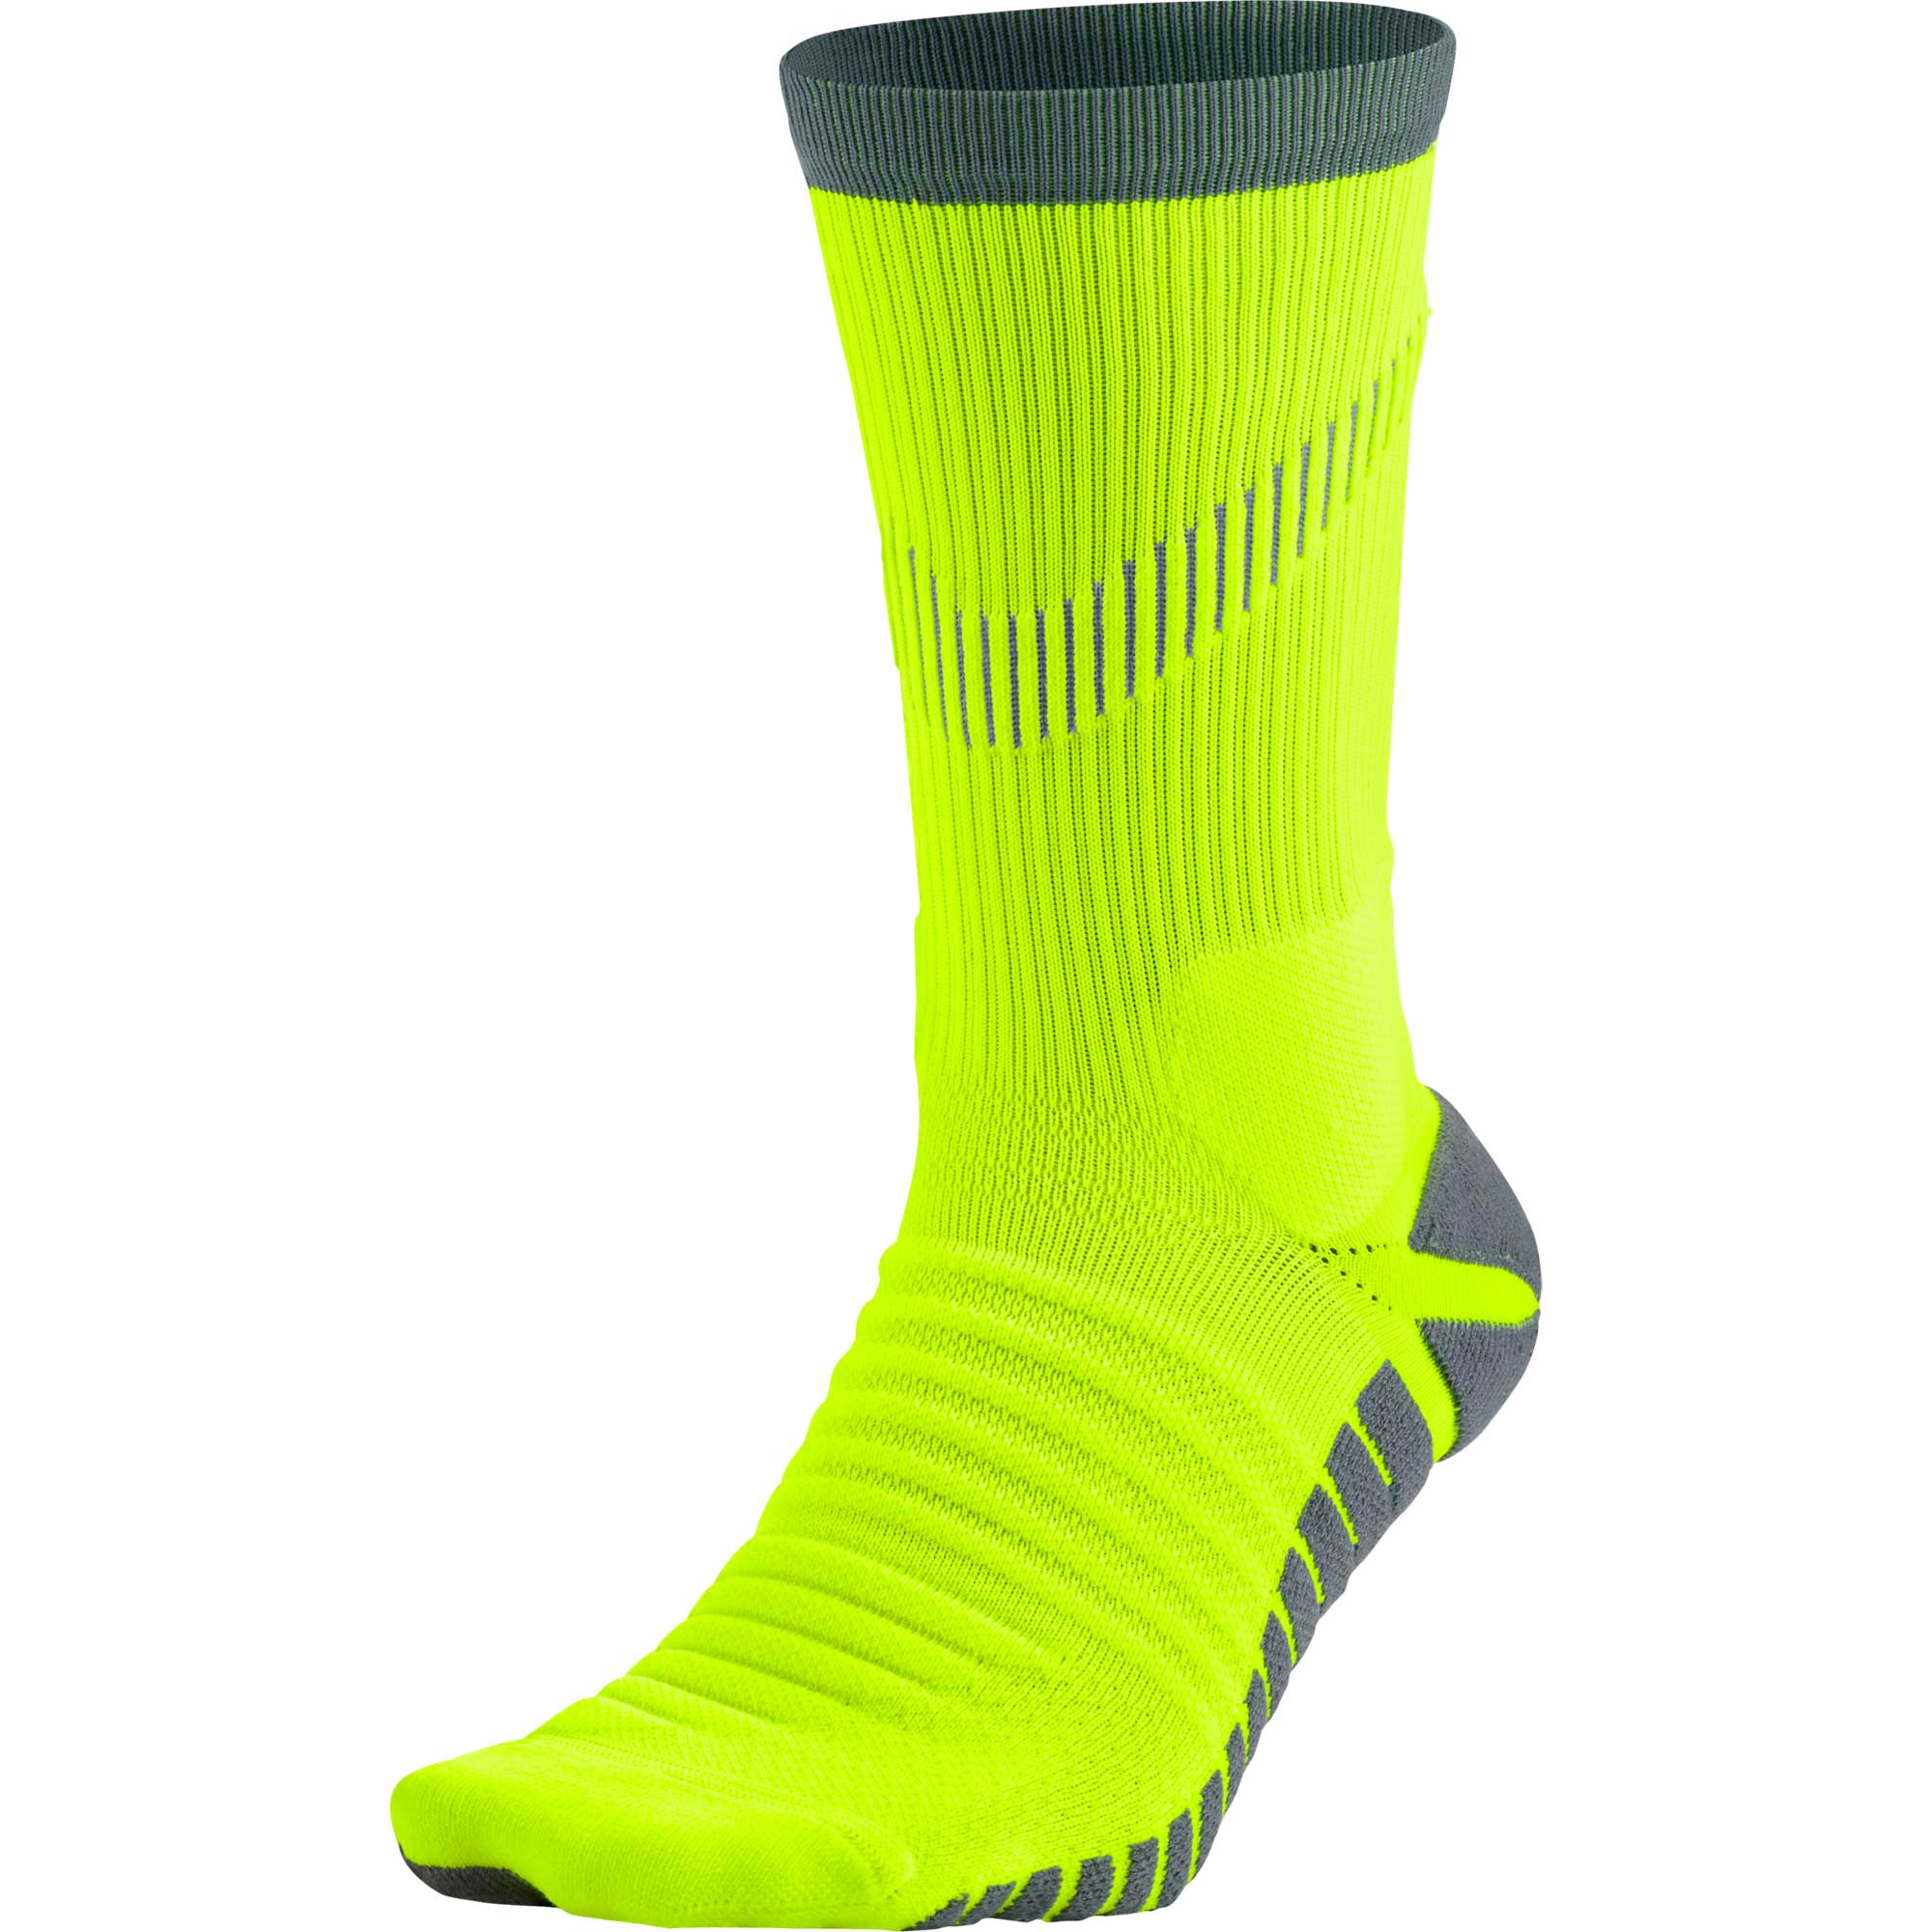 ronaldo soccer socks